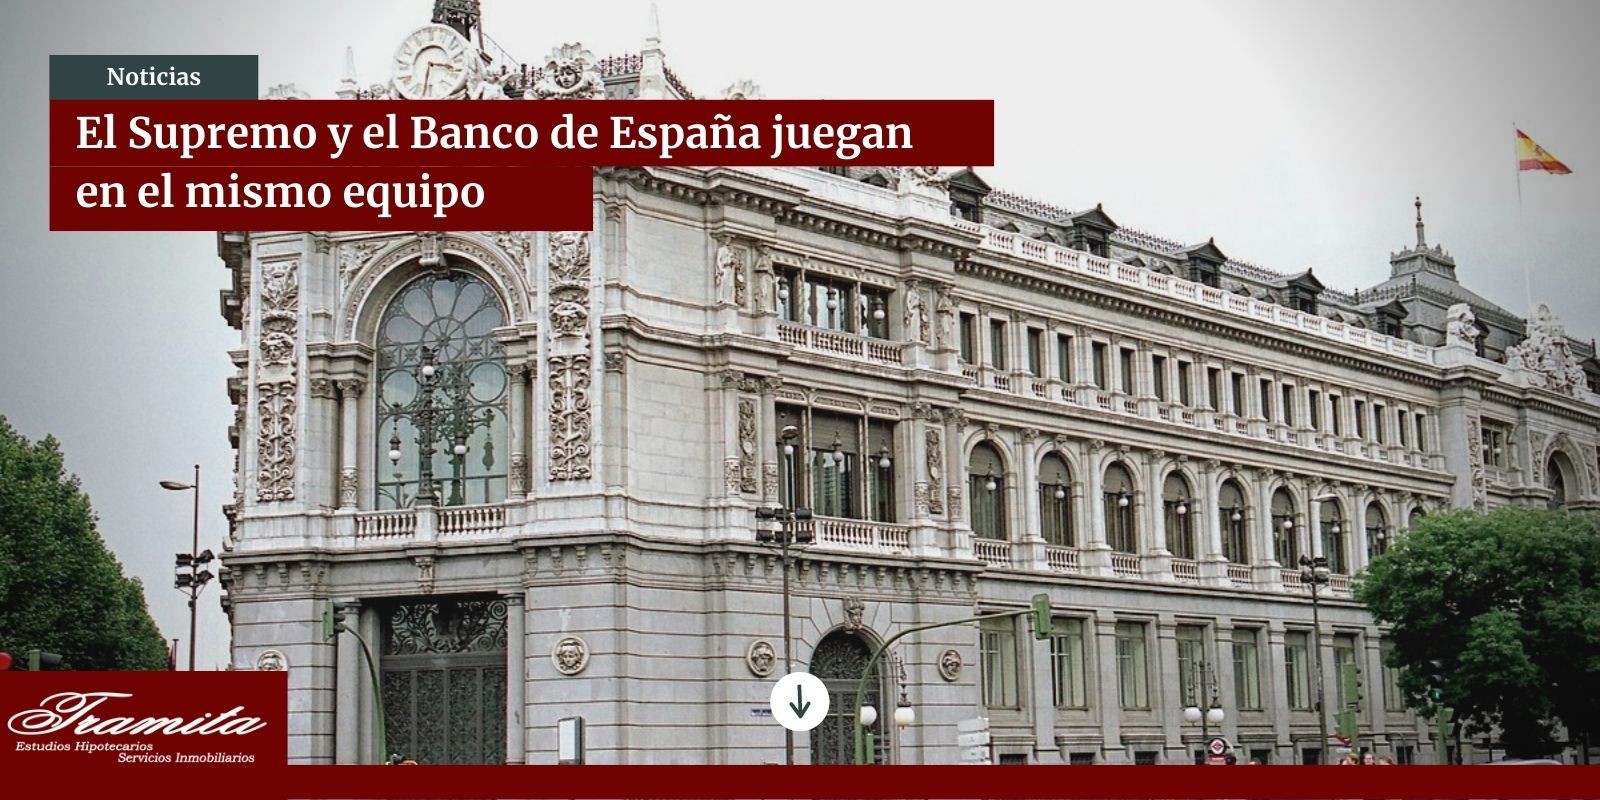 El Supremo y el Banco de España juegan en el mismo equipo